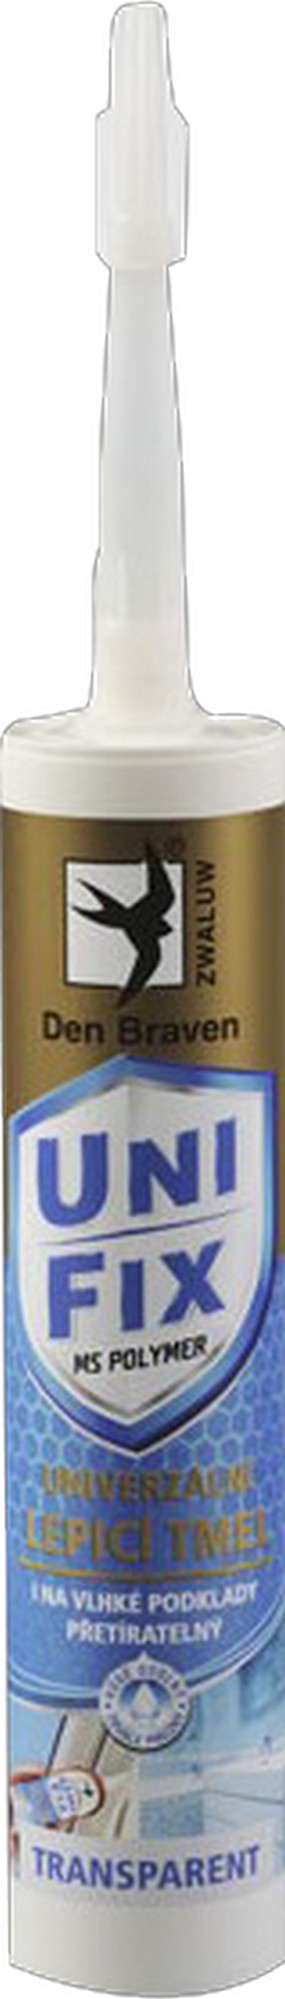 Tmel univerzální Den Braven UNIFIX šedý 290 ml